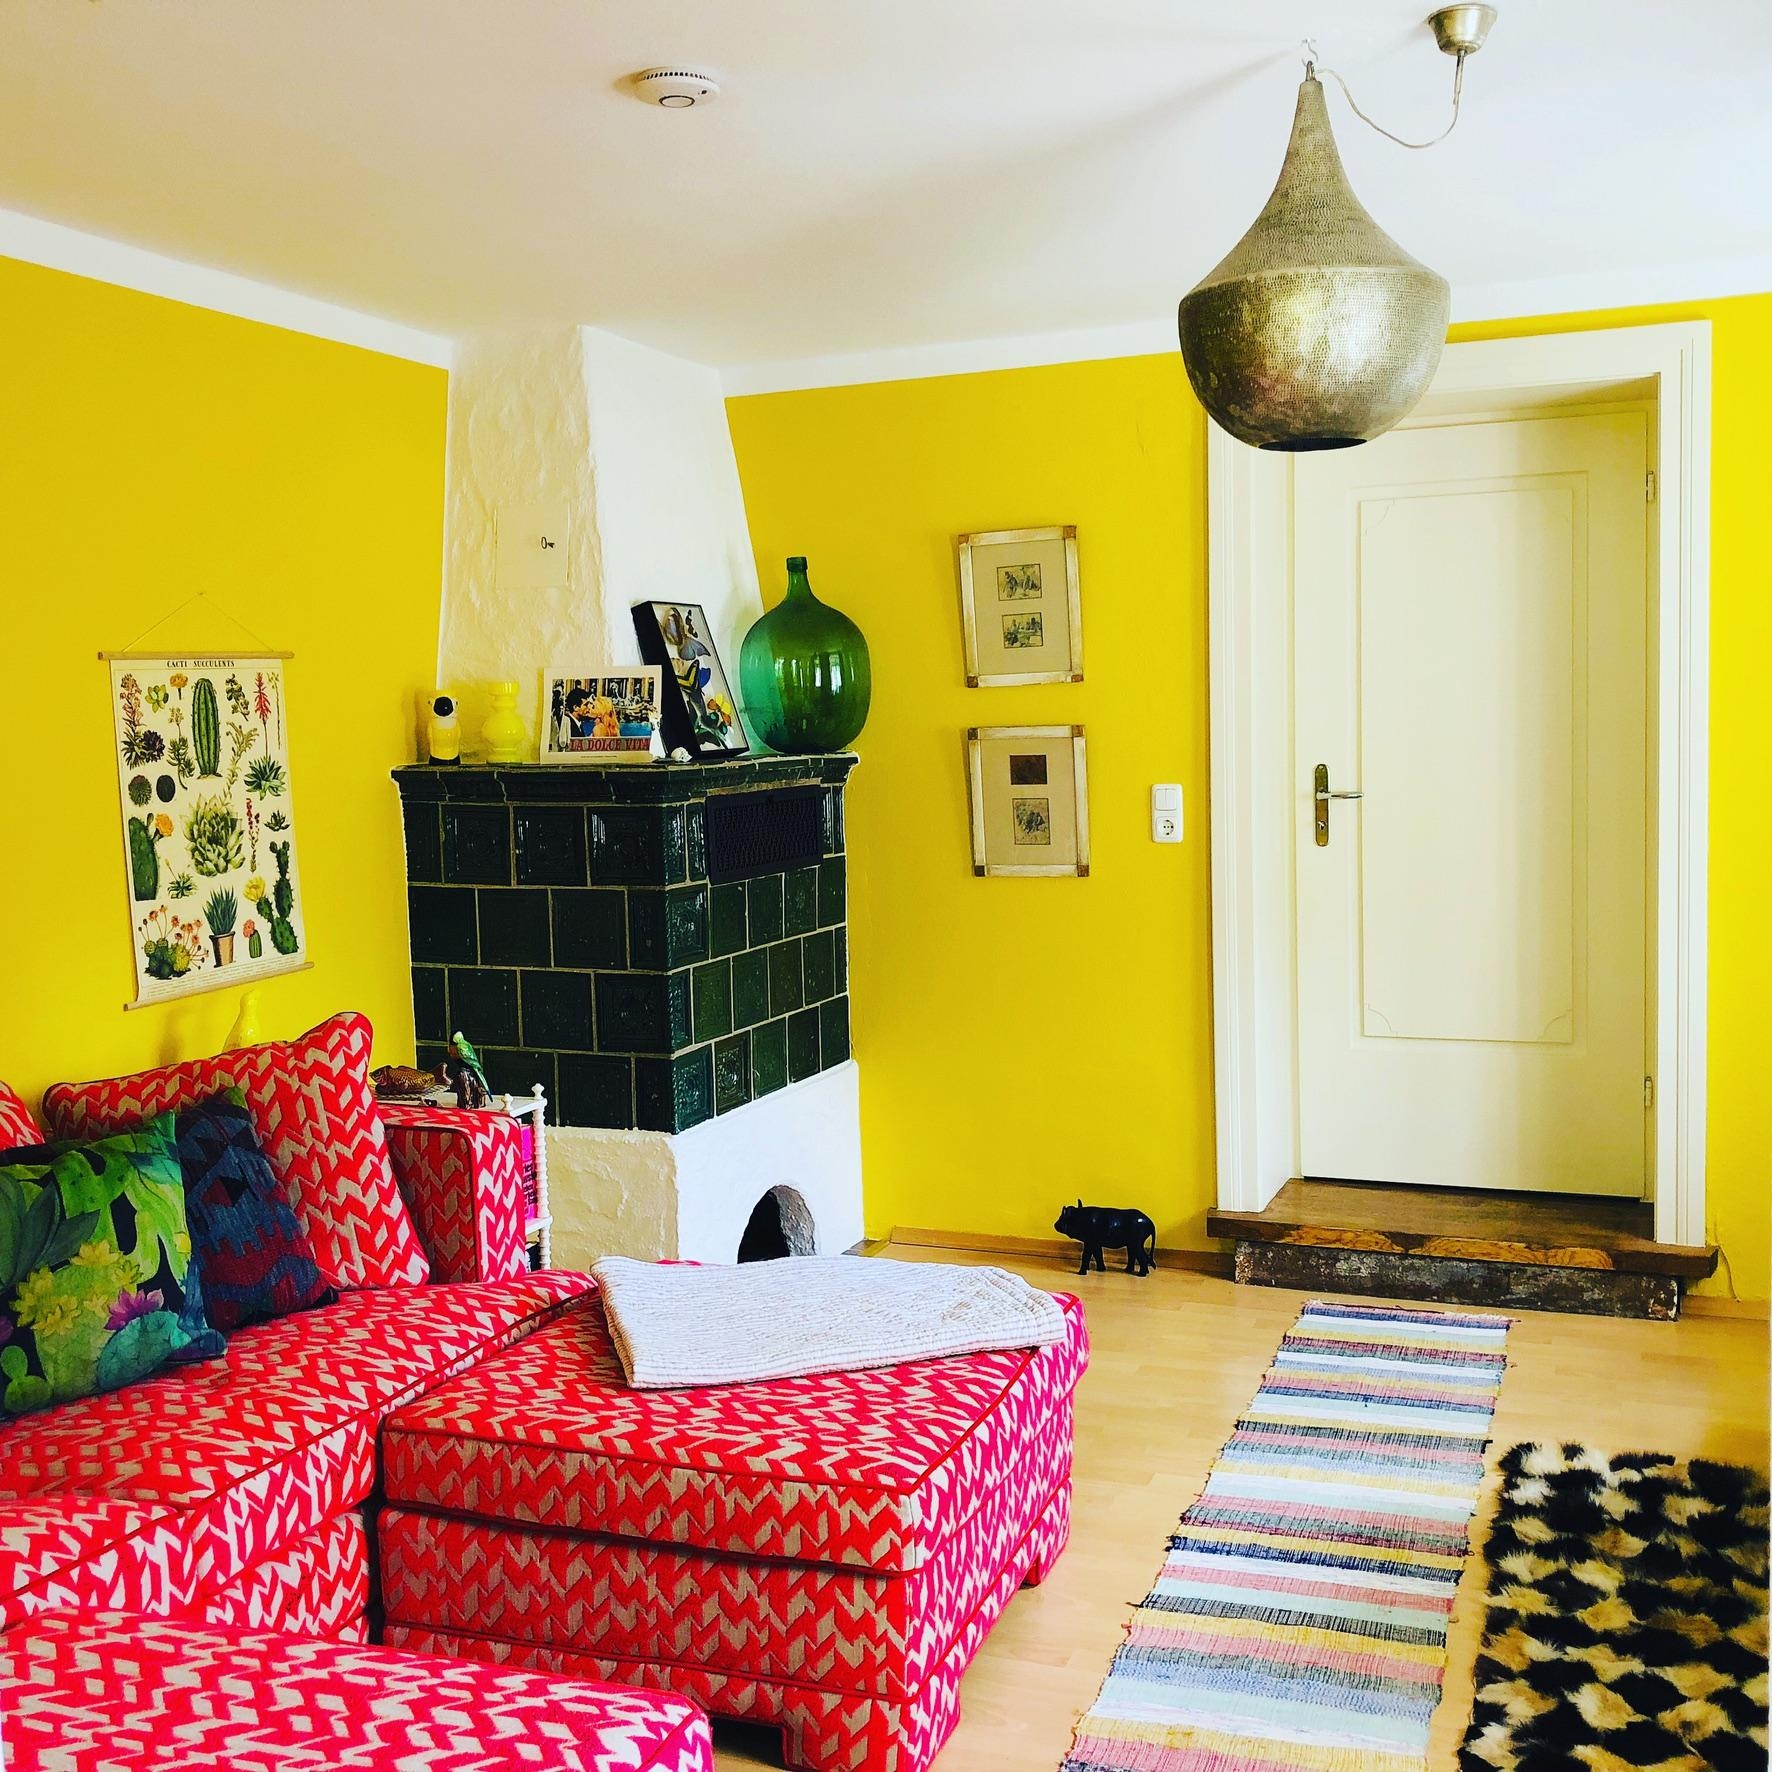 #Couch #Altbau #farben #rot #gelb #bunt #Wohnzimmer